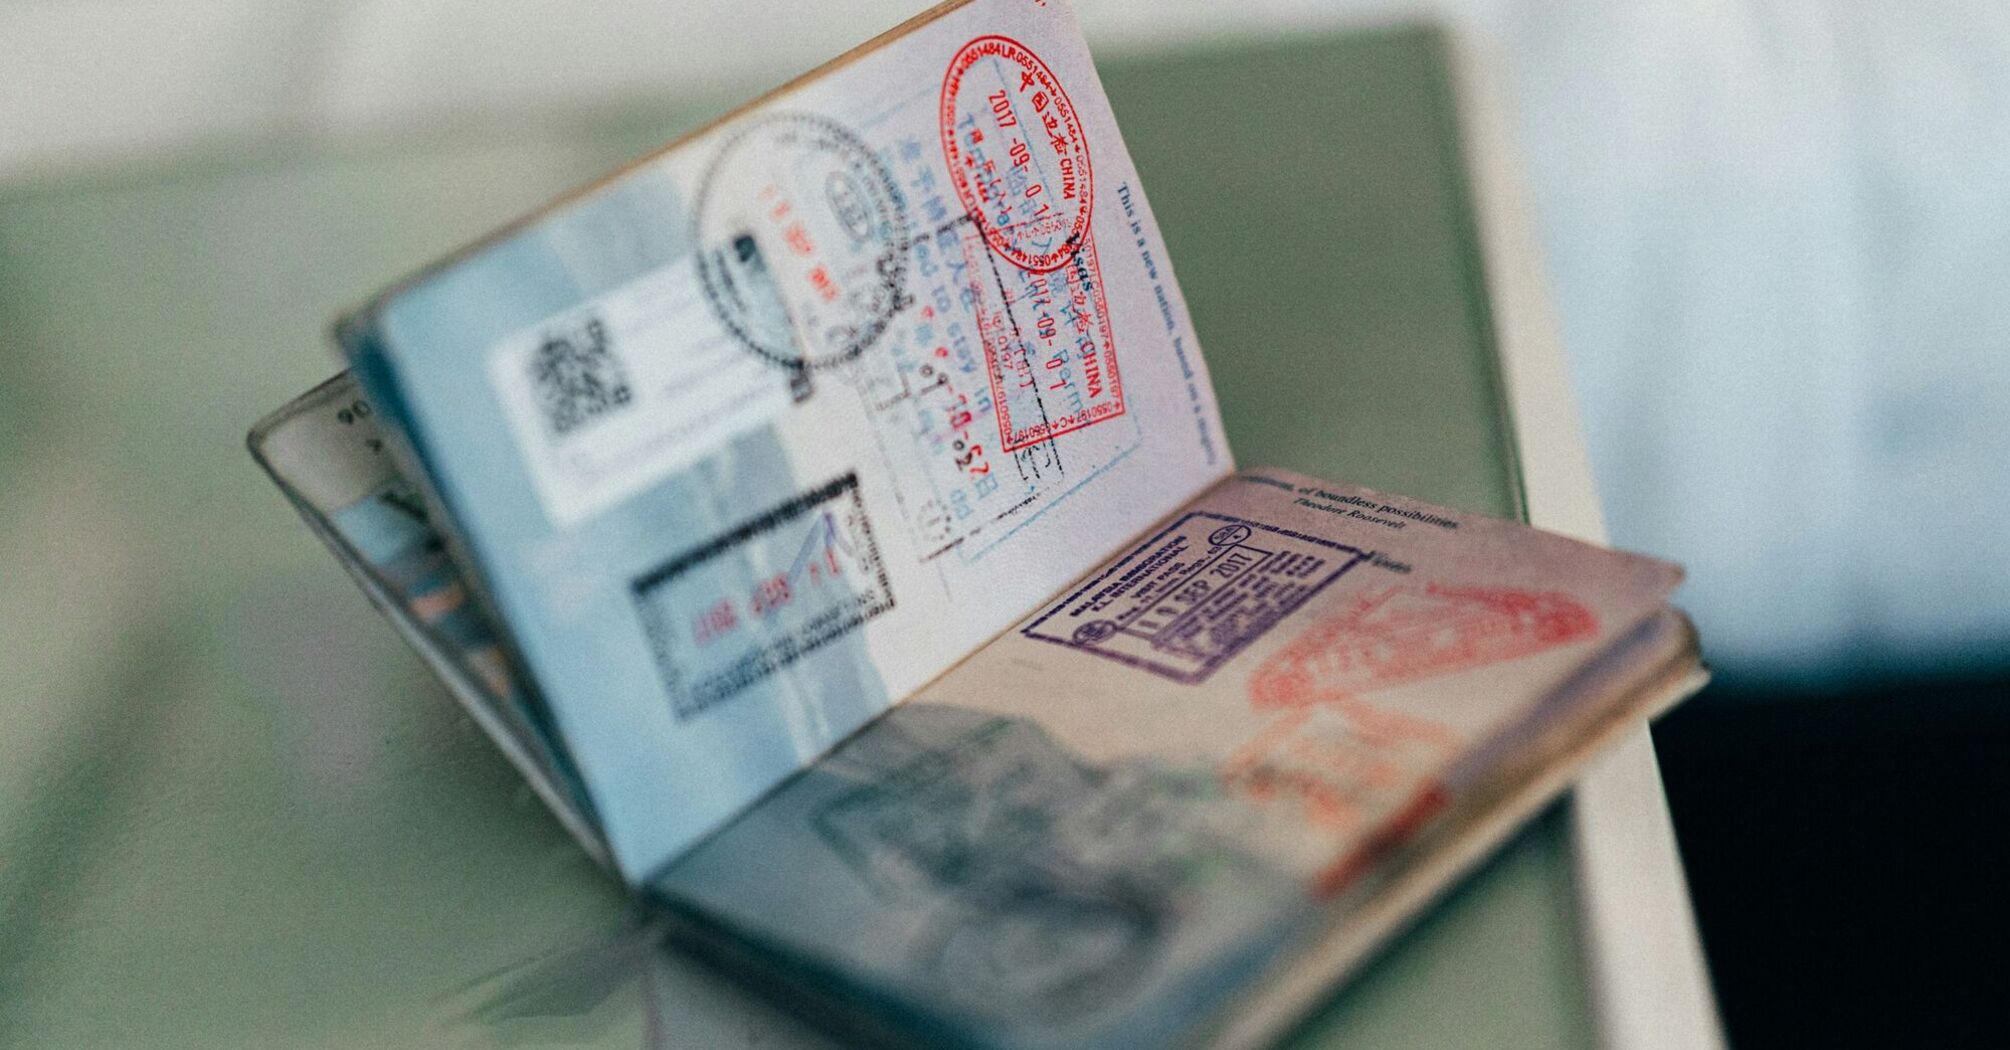 Open passport displaying various visa stamps